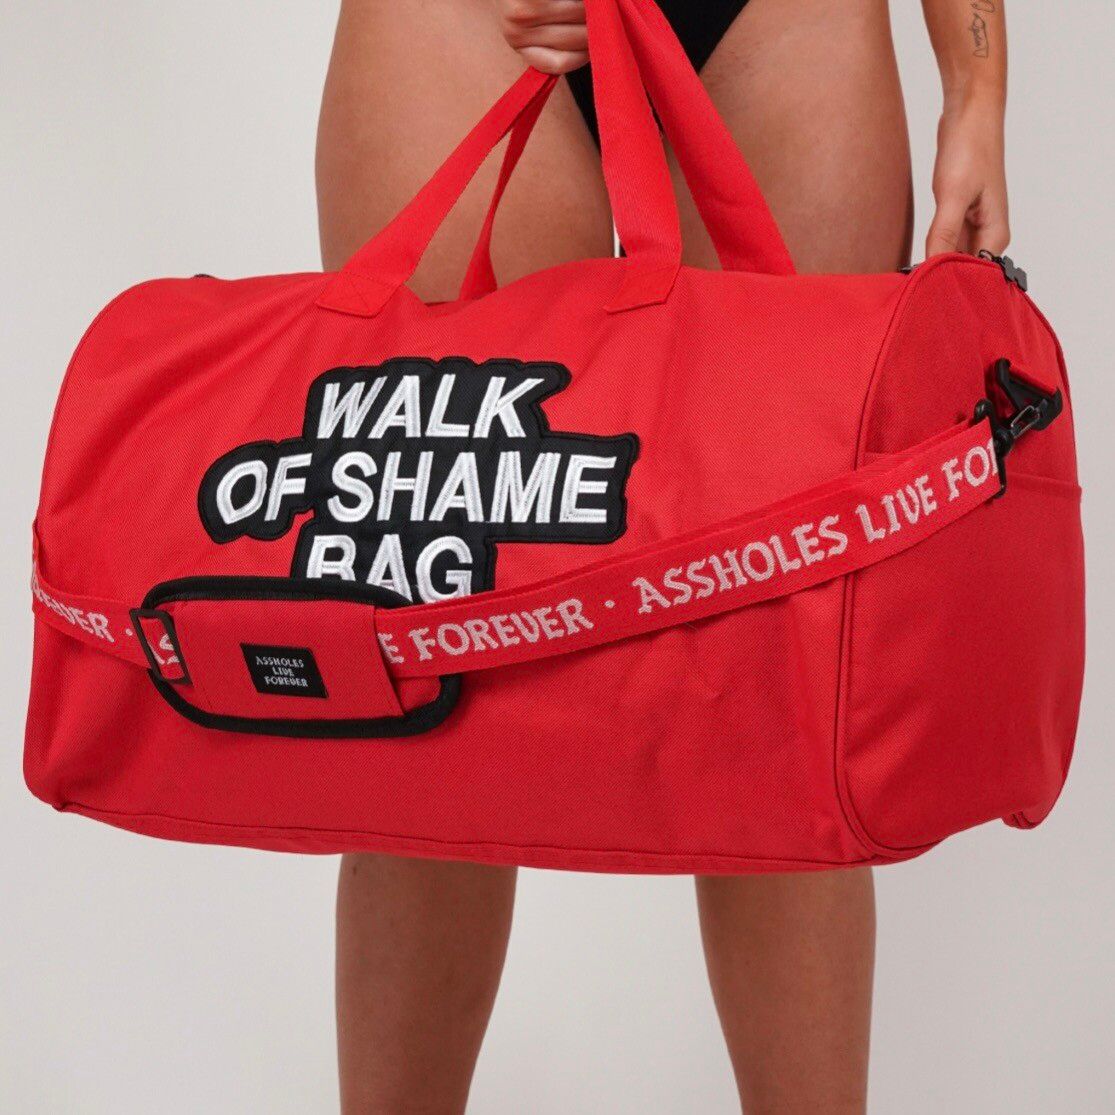 The Walk of Shame: Overnight Bag Essentials